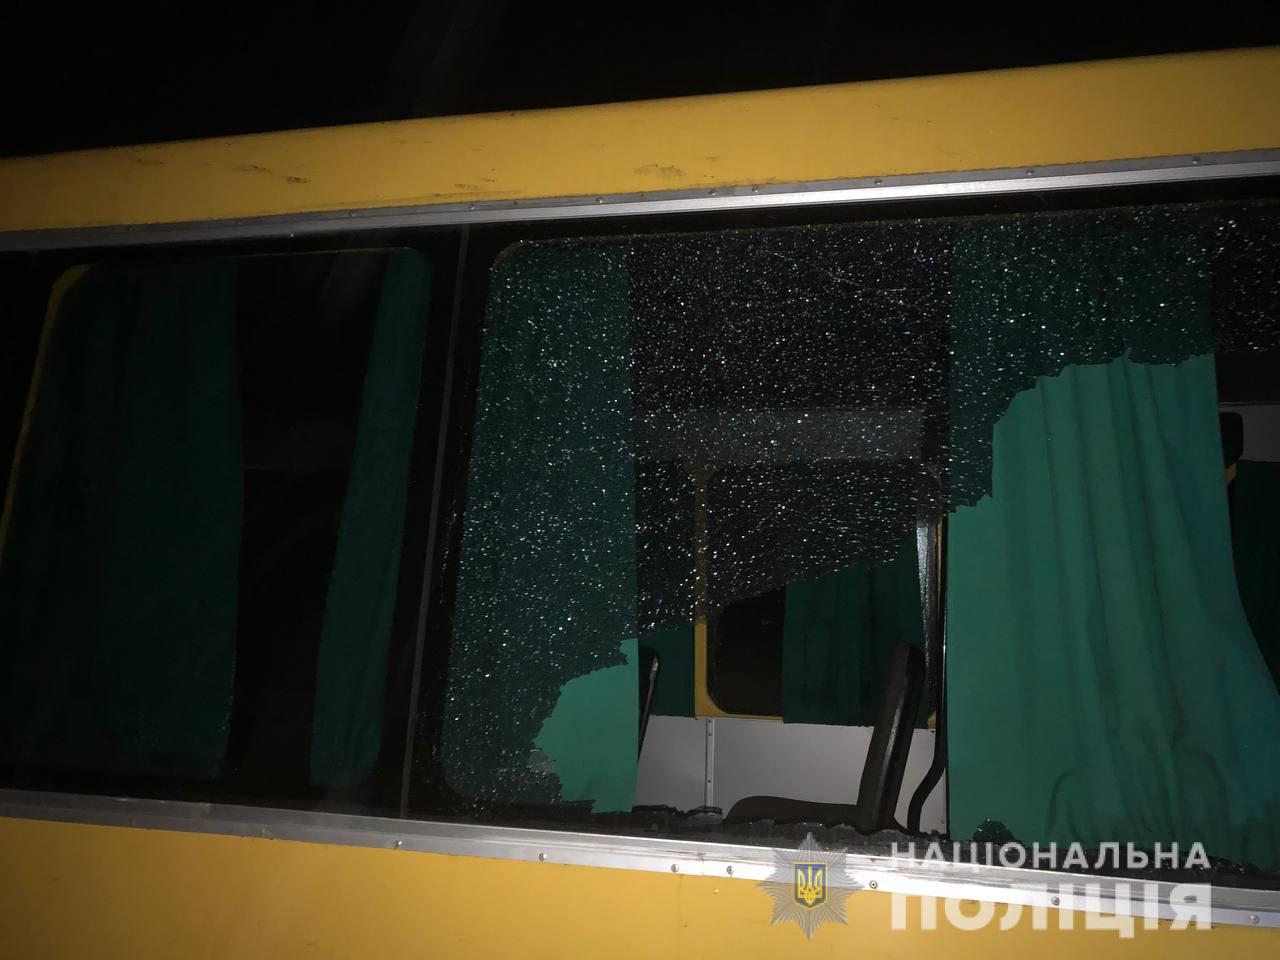 Выпавшее из грузовика бревно пробило окно маршрутки. Источник: полиция Ровенской области